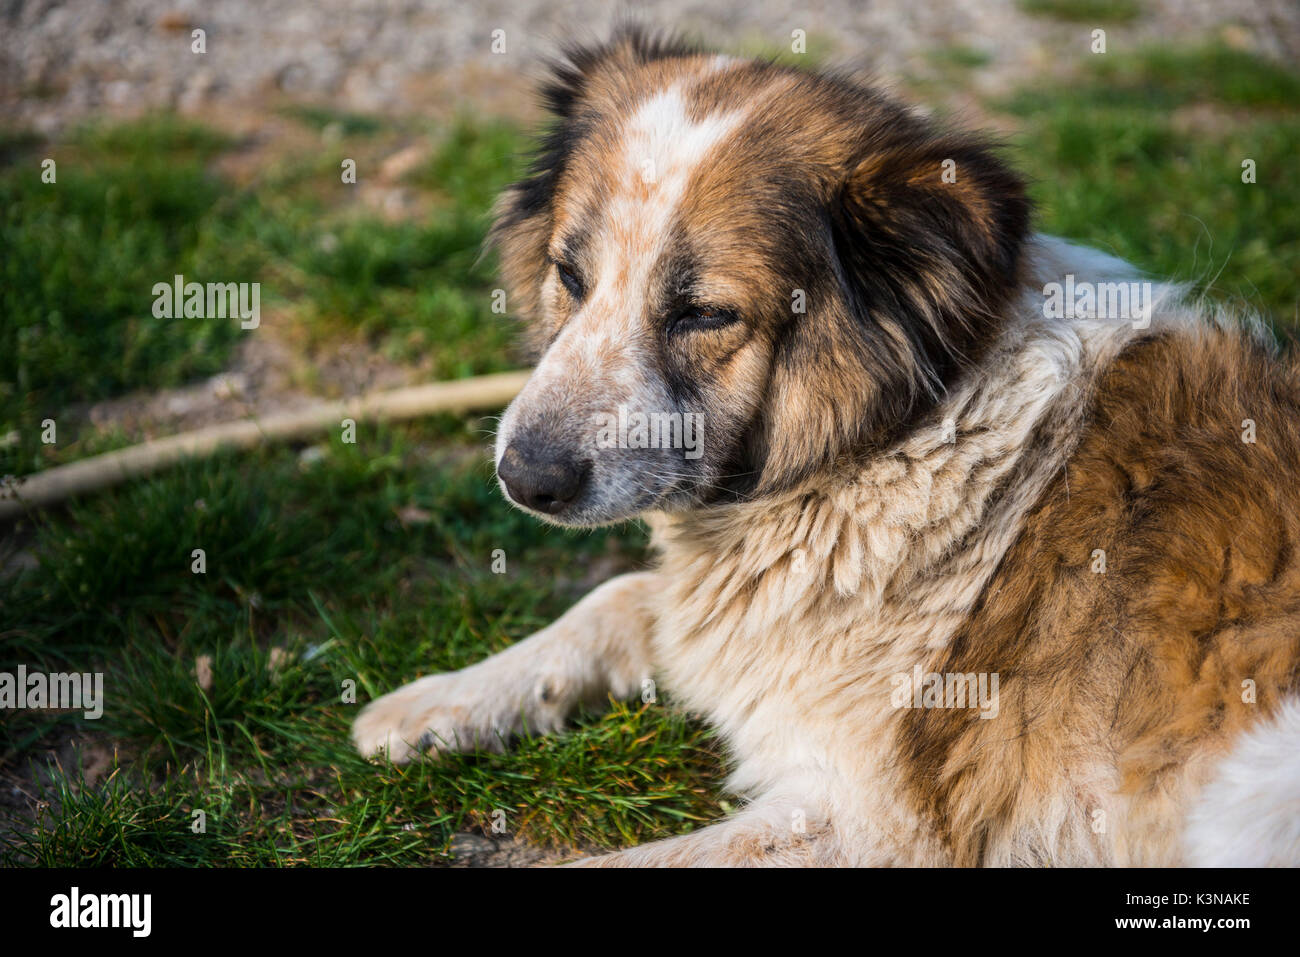 Italia, Toscana, perro de pelaje blanco y marrón, relajándose en un camino de tierra prestando atención a algo Foto de stock